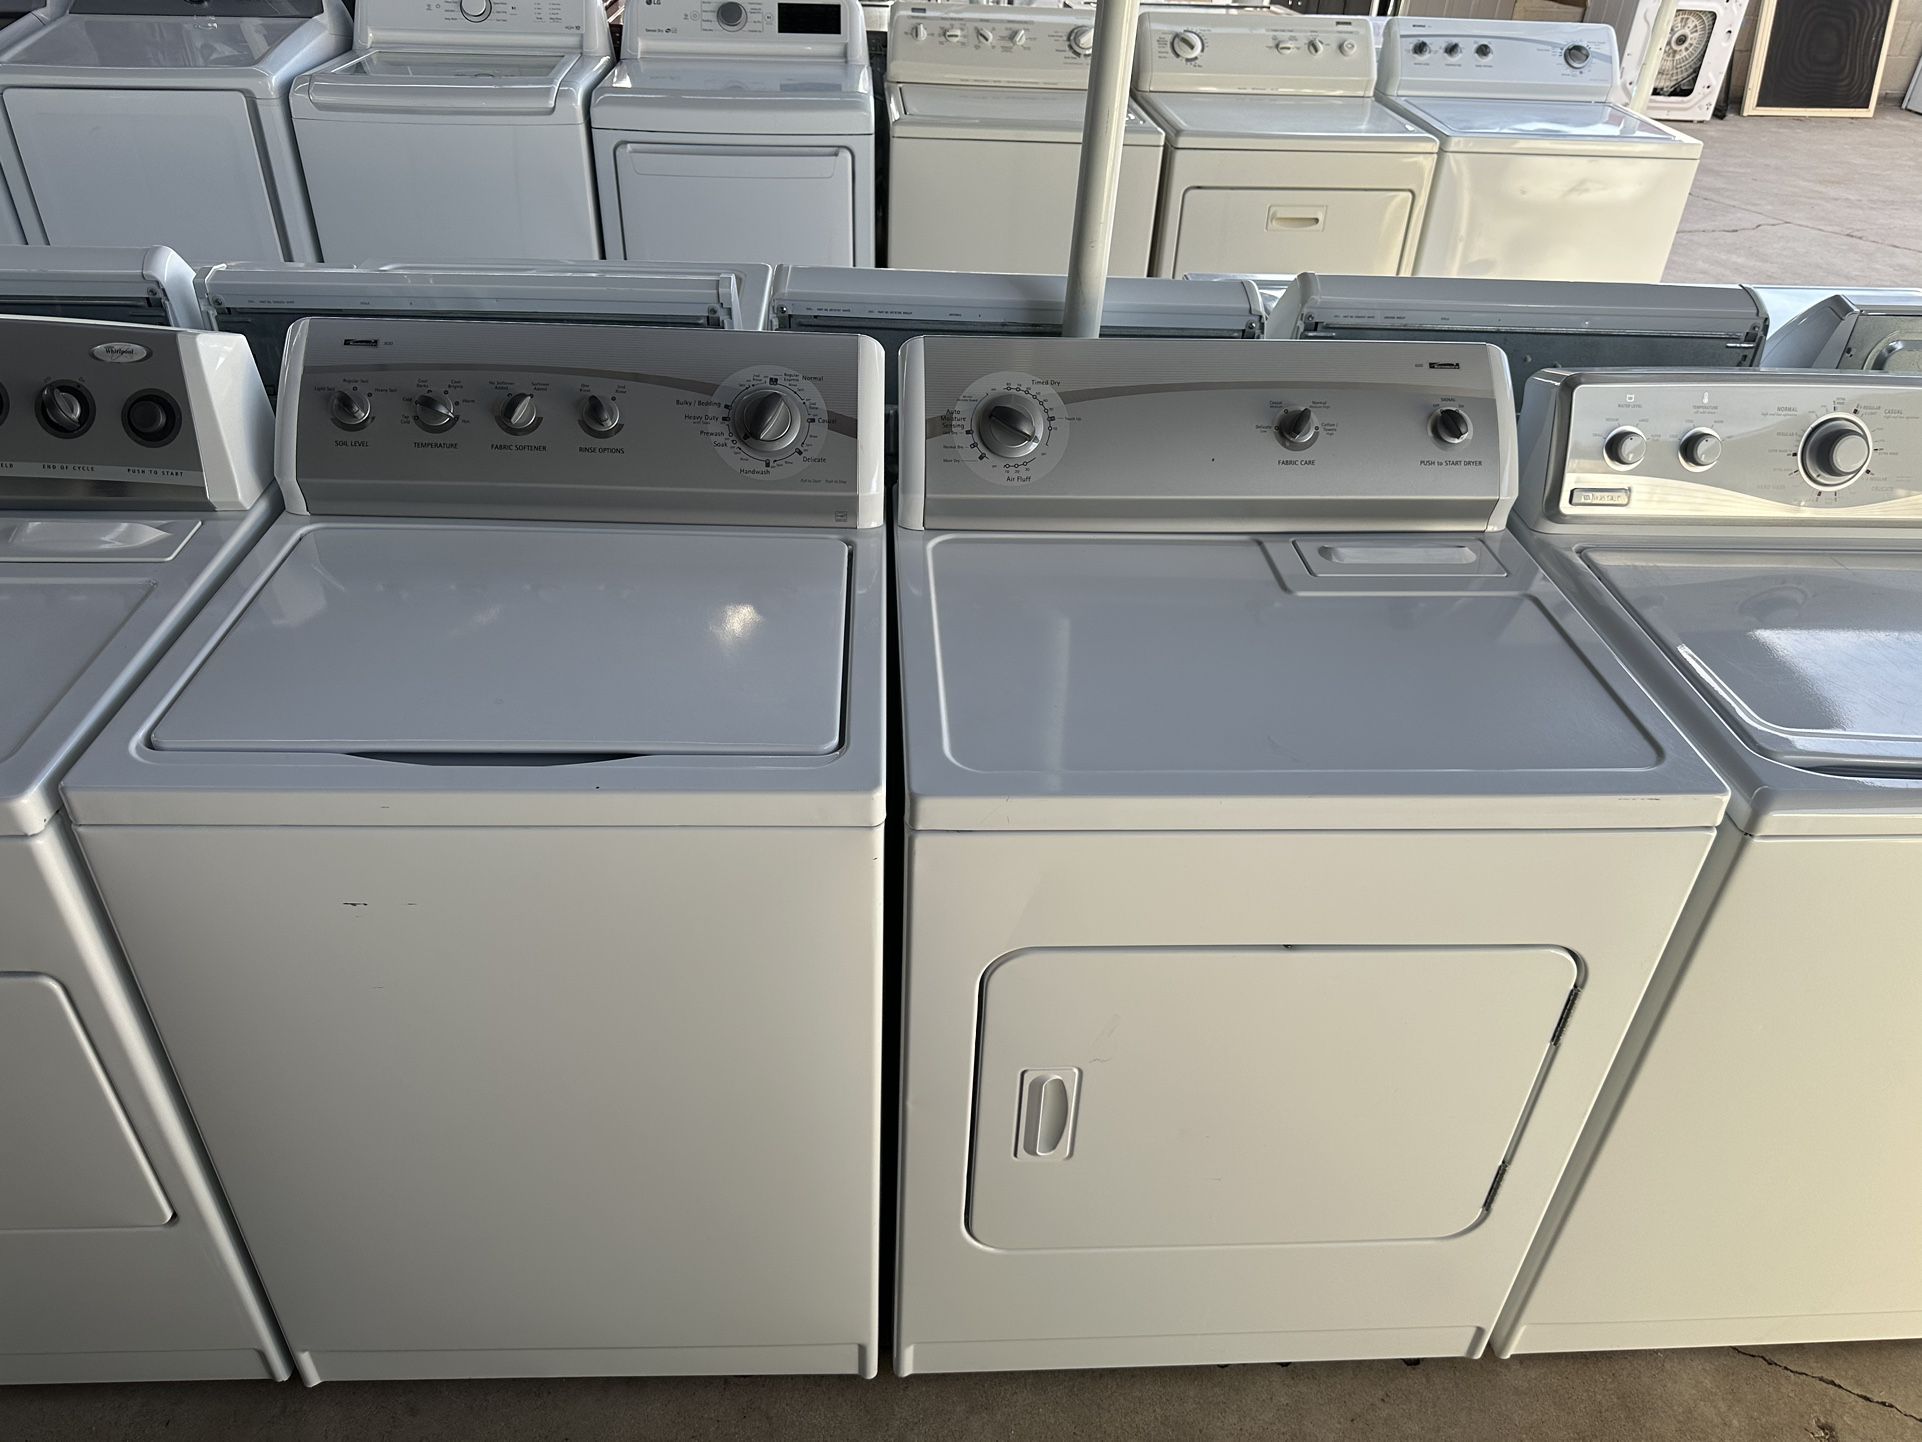 Kenmore Washer & Dryer Set 220v